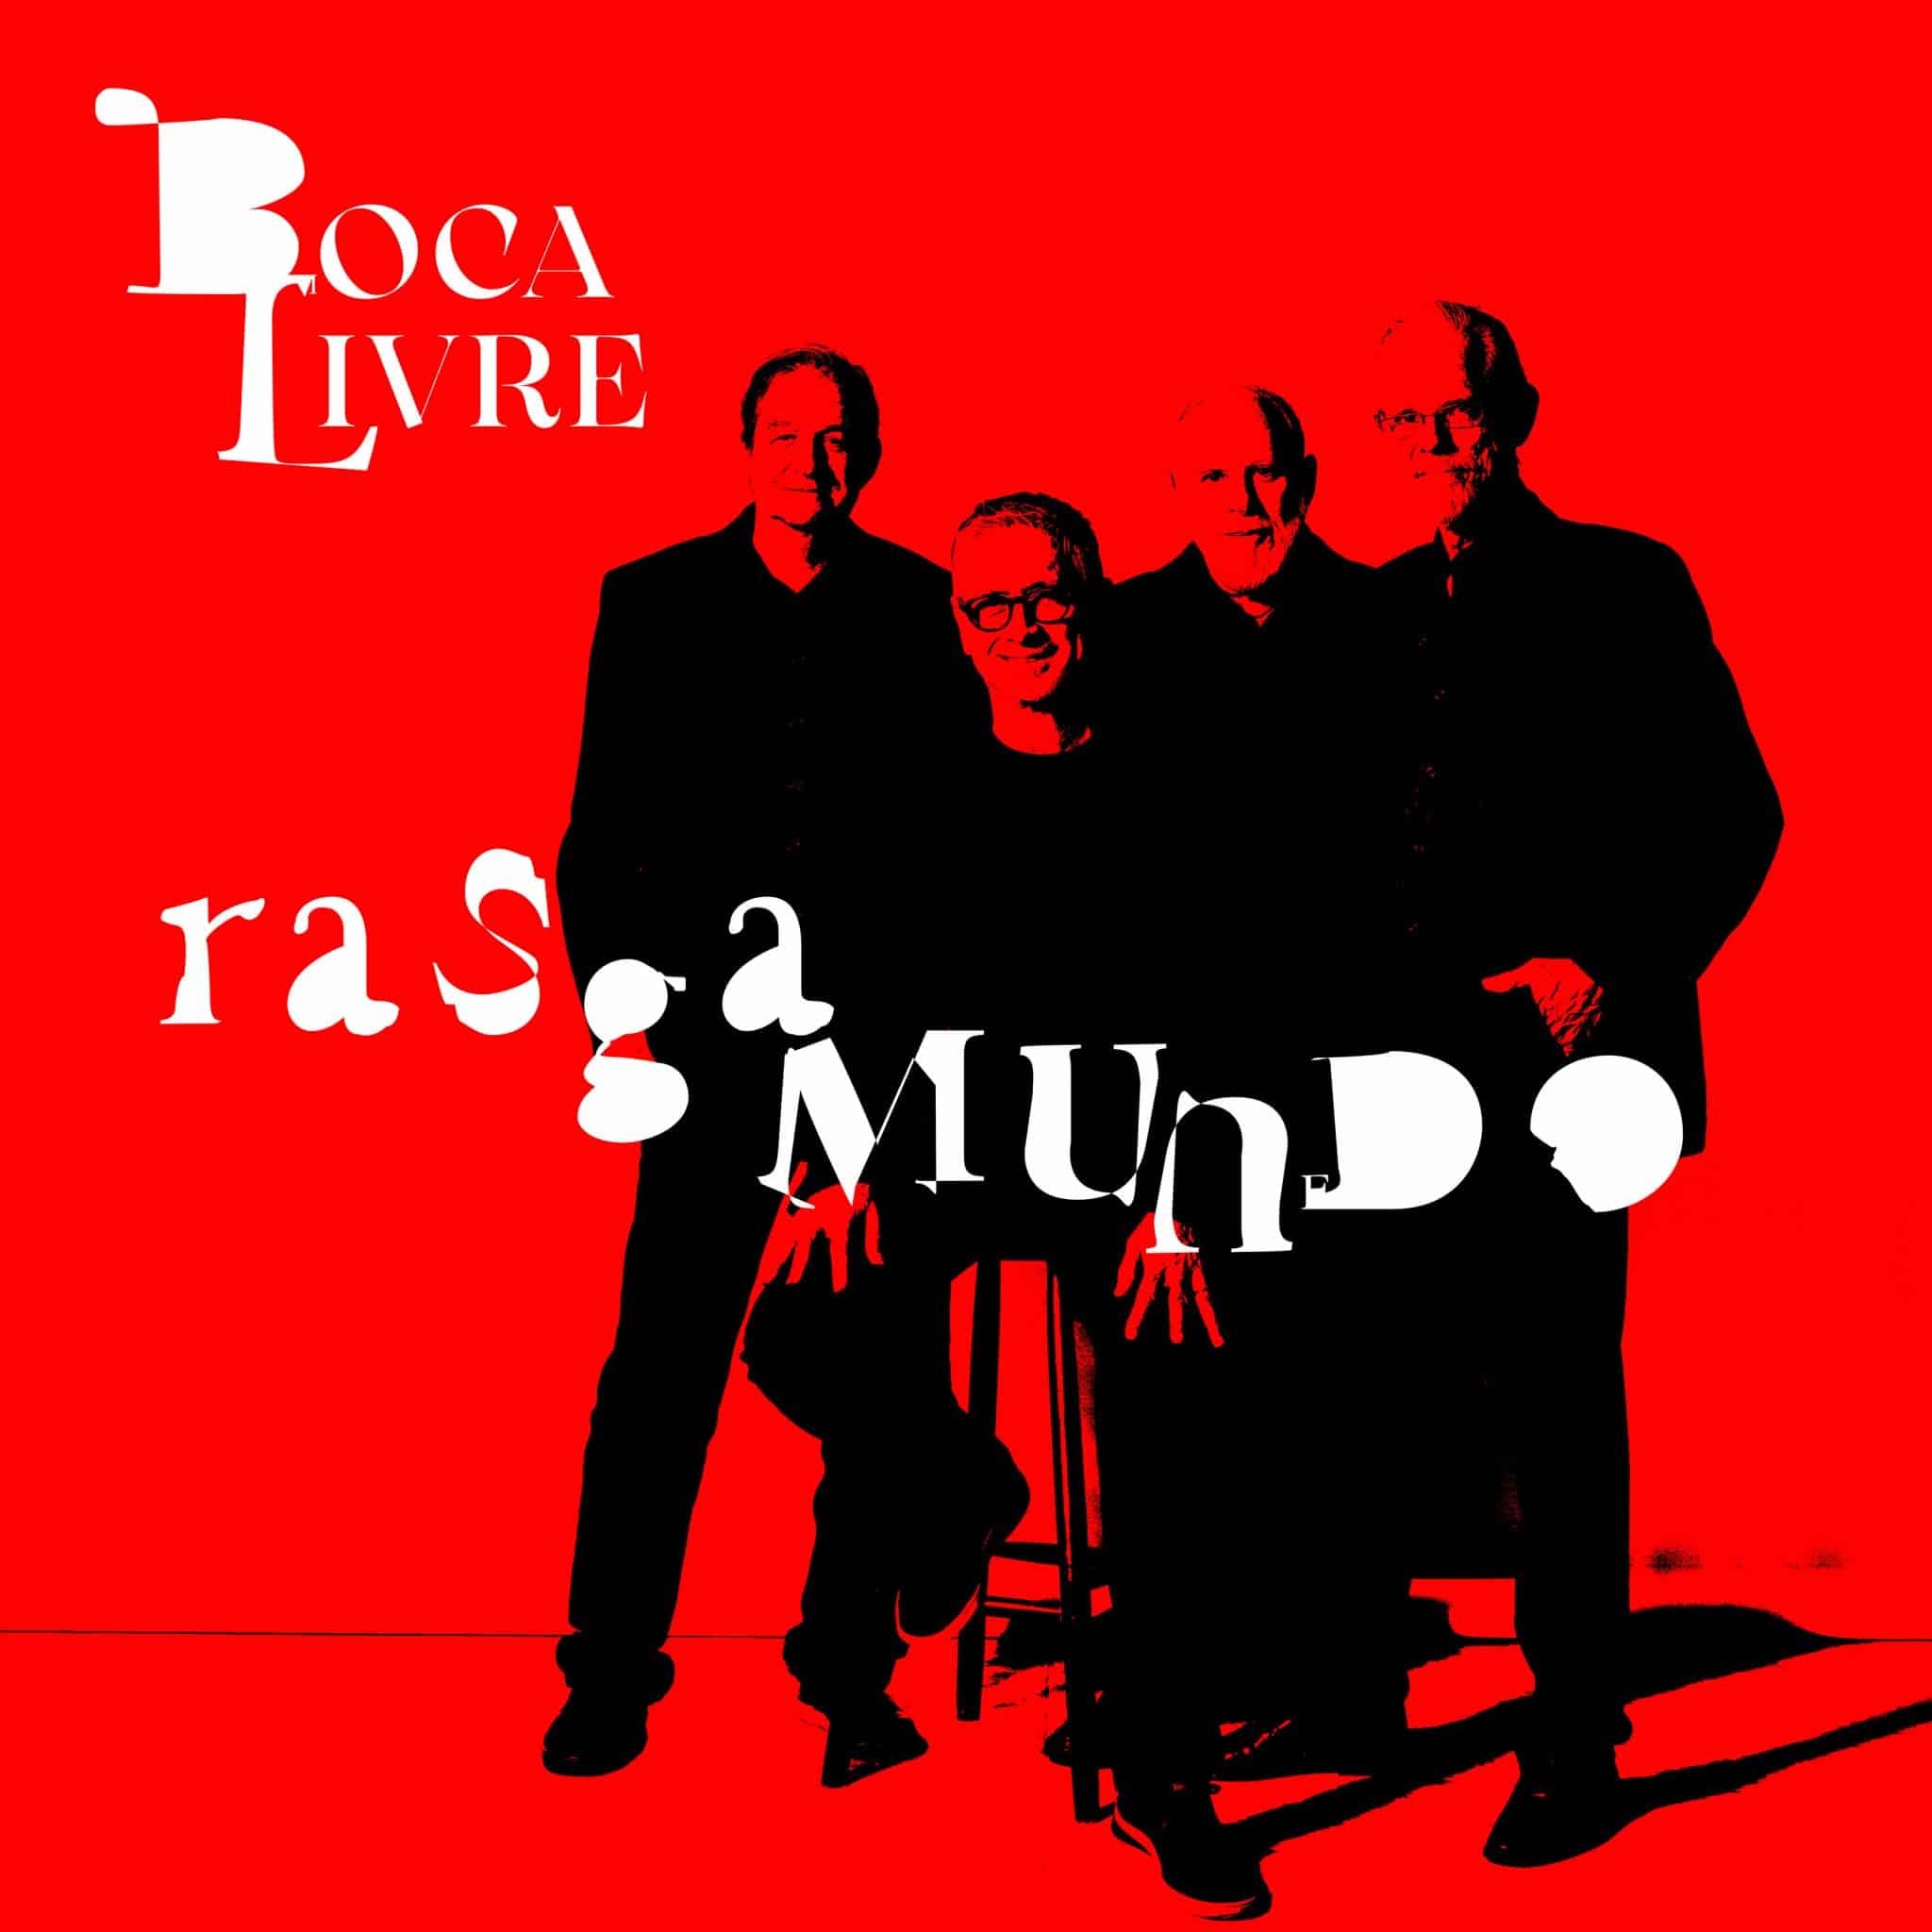 revistaprosaversoearte.com - Boca Livre lança 'Rasgamundo', 16º álbum do grupo